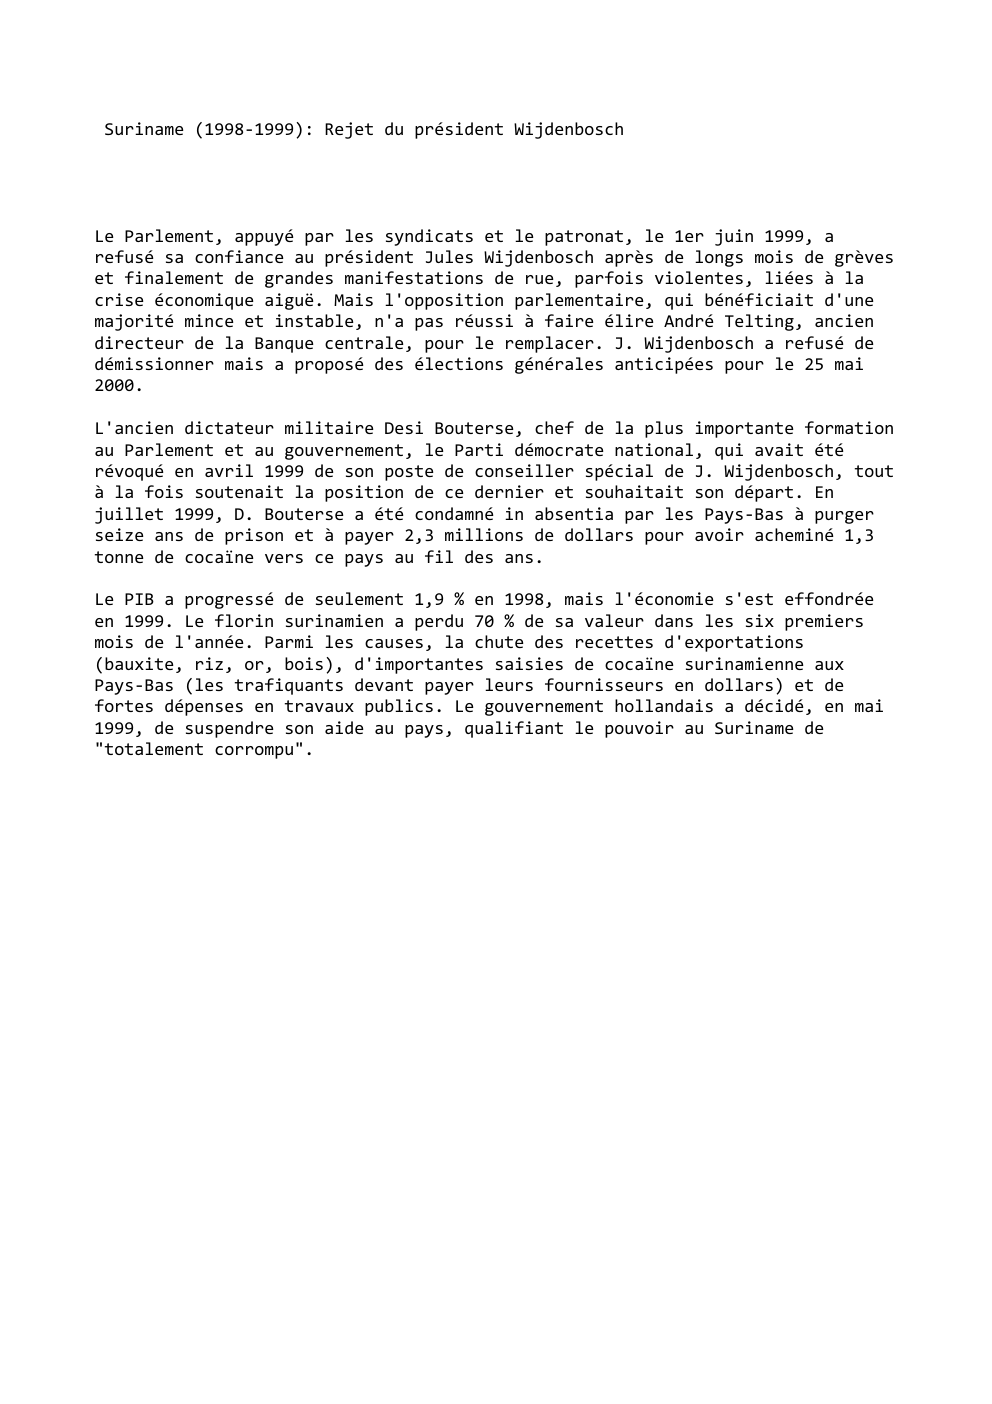 Prévisualisation du document Suriname (1998-1999): Rejet du président Wijdenbosch

Le Parlement, appuyé par les syndicats et le patronat, le 1er juin 1999, a...